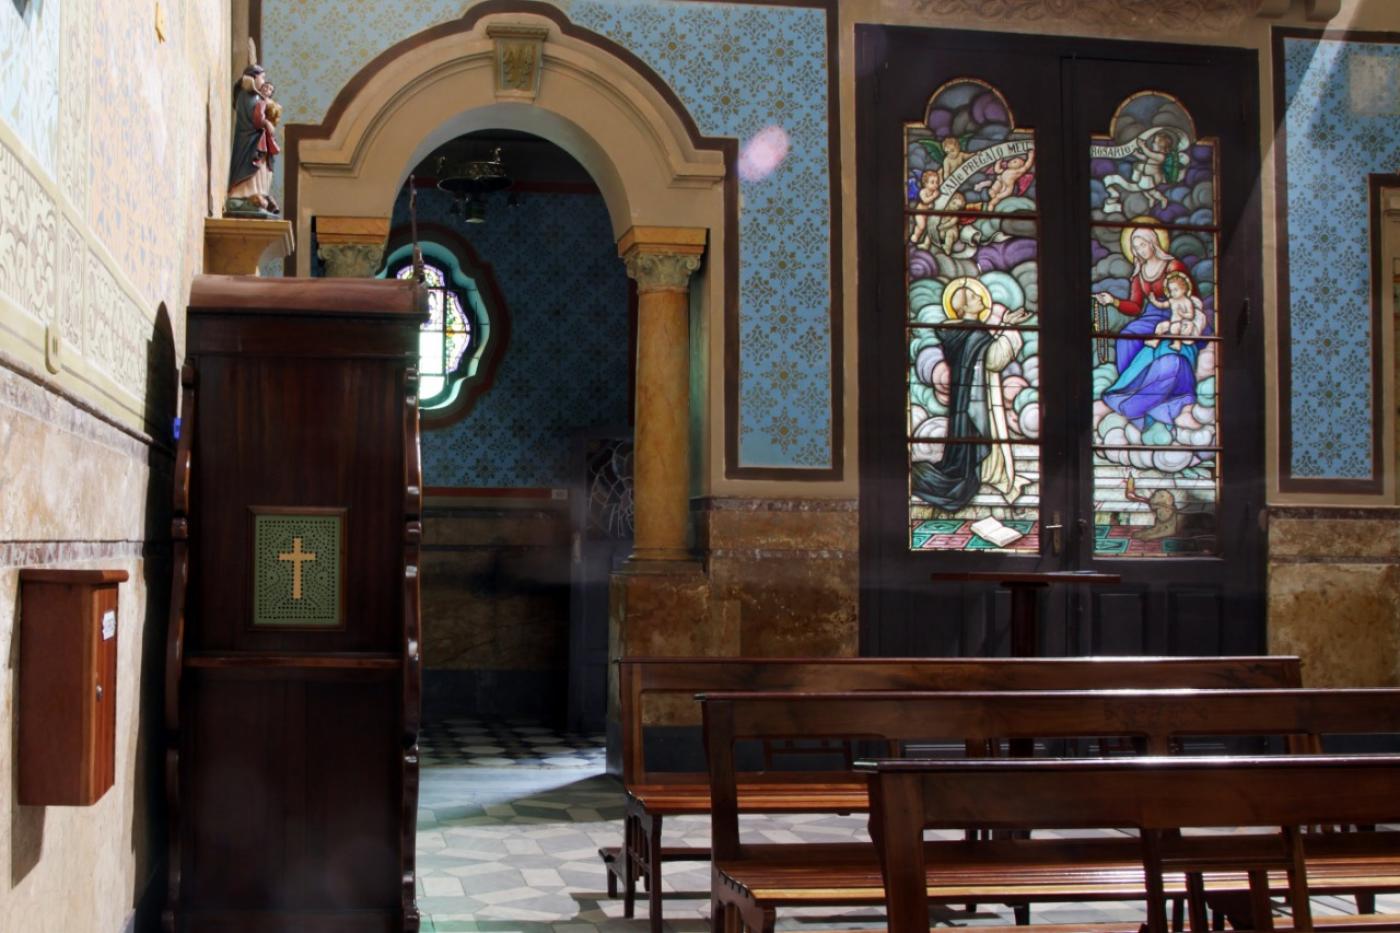 Interior da igreja do rosário, com bancos, paredes decoradas com azulejos e vitrais ao fundo. #paratodosverem